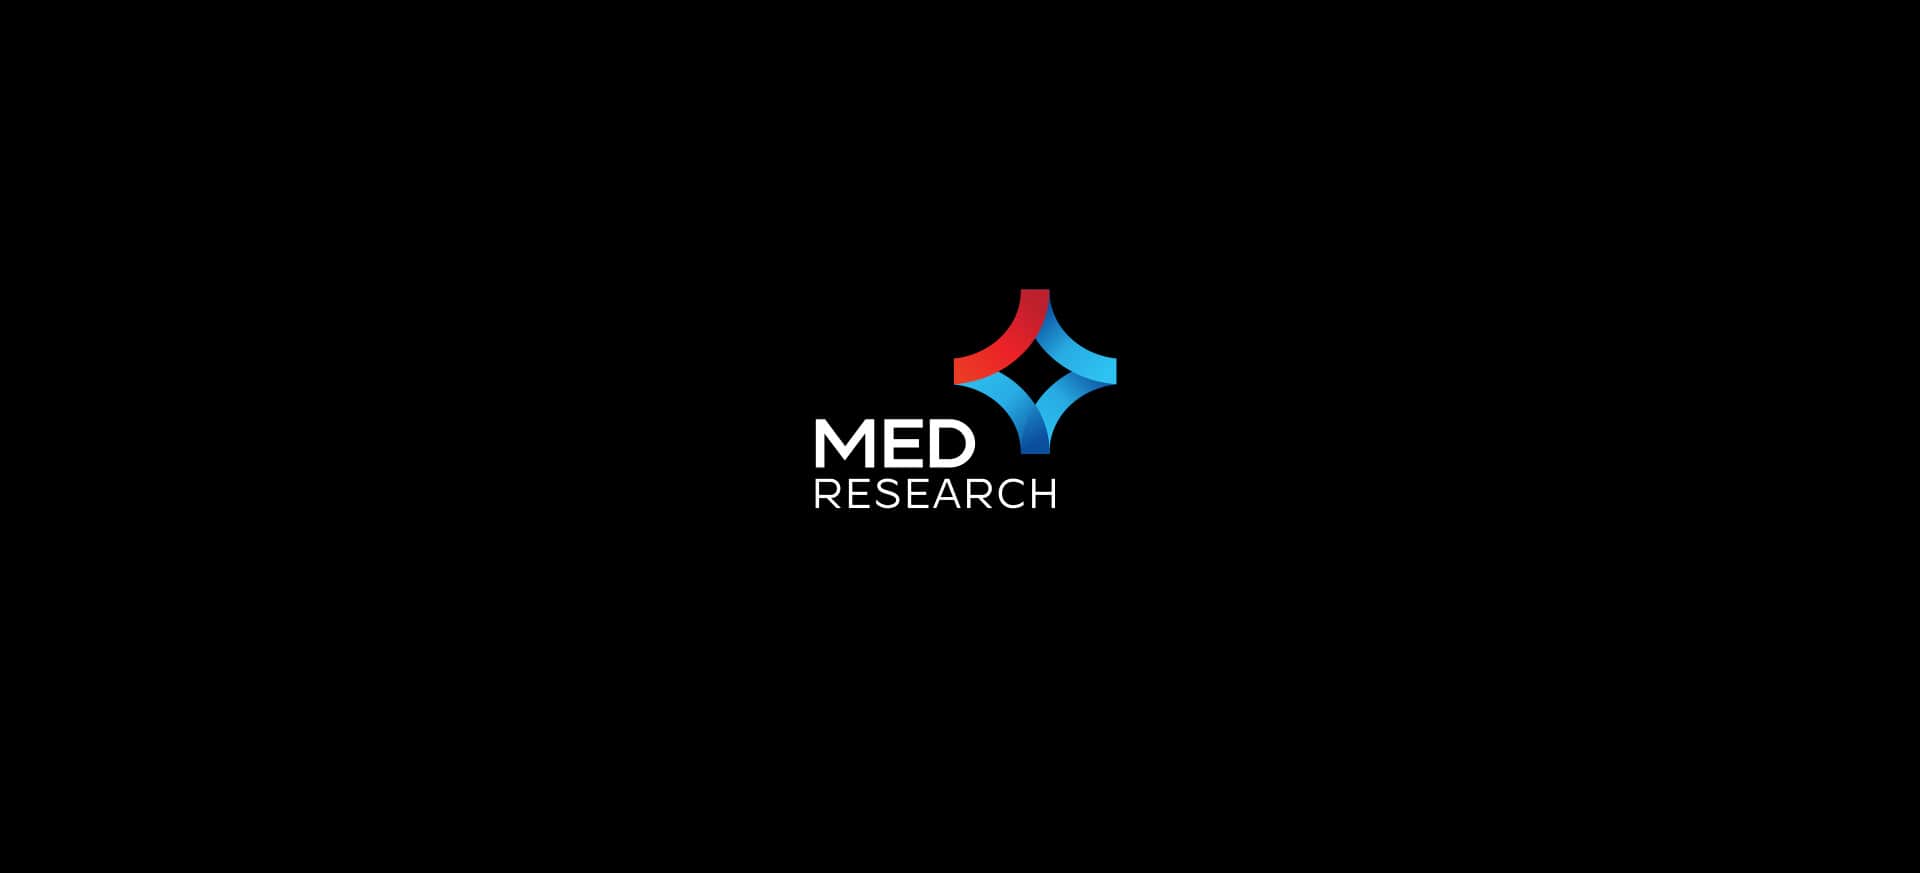 projekt logo med research